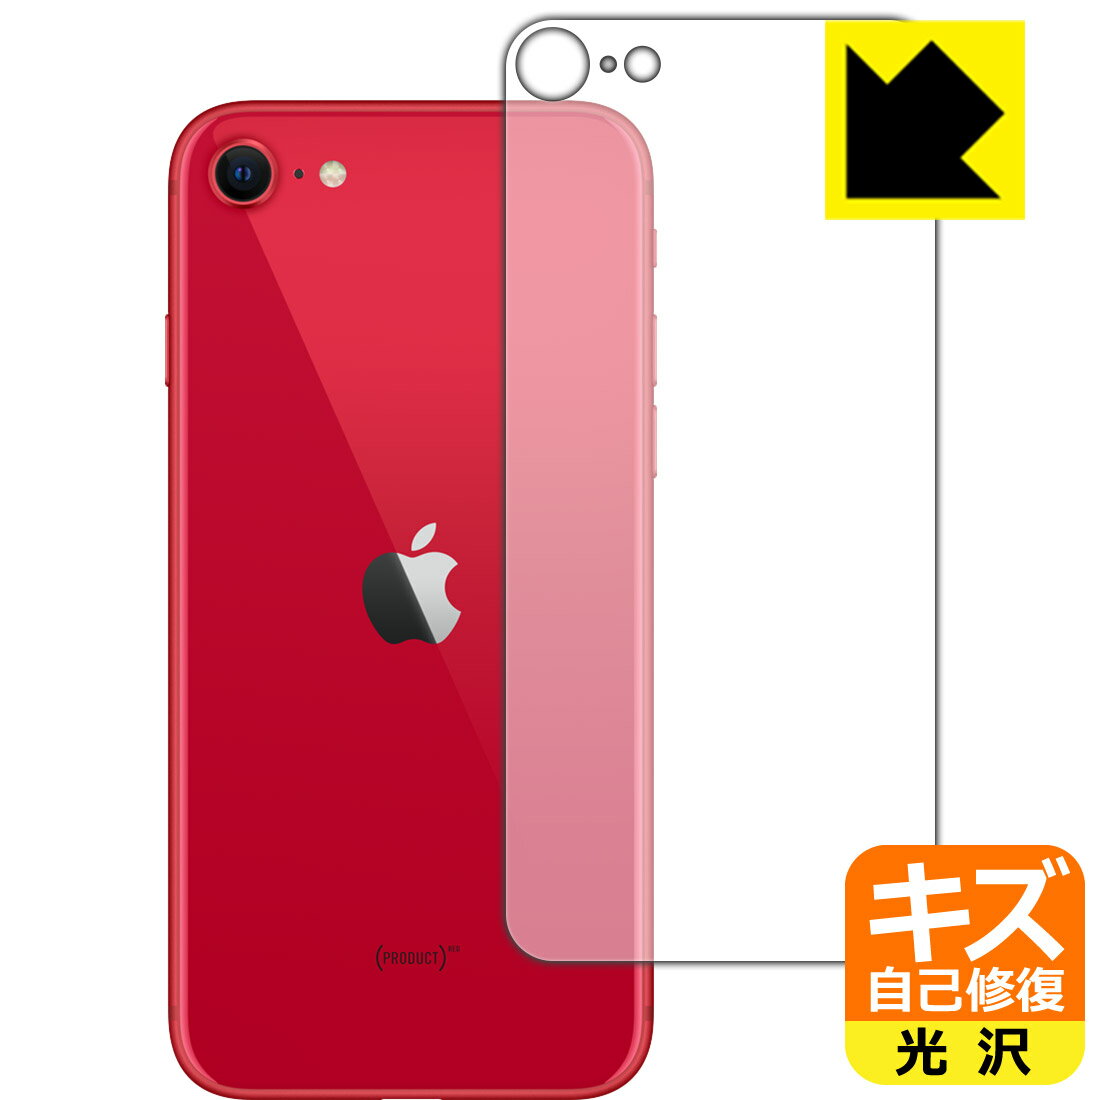 キズ自己修復保護フィルム iPhone SE (第2世代) 背面のみ 【O型】 日本製 自社製造直販